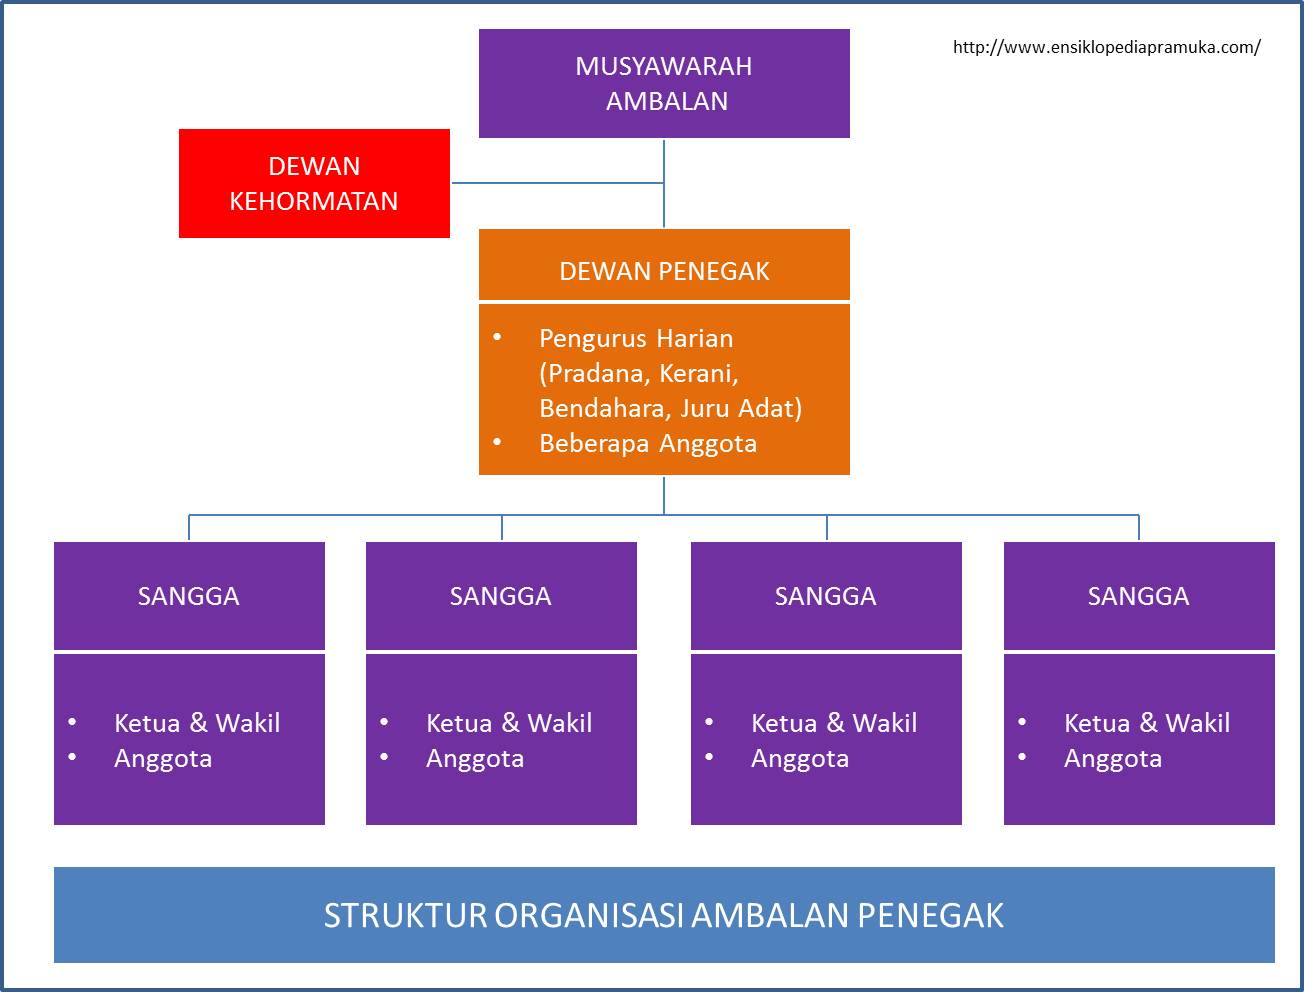 Struktur Organisasi Ambalan Penegak